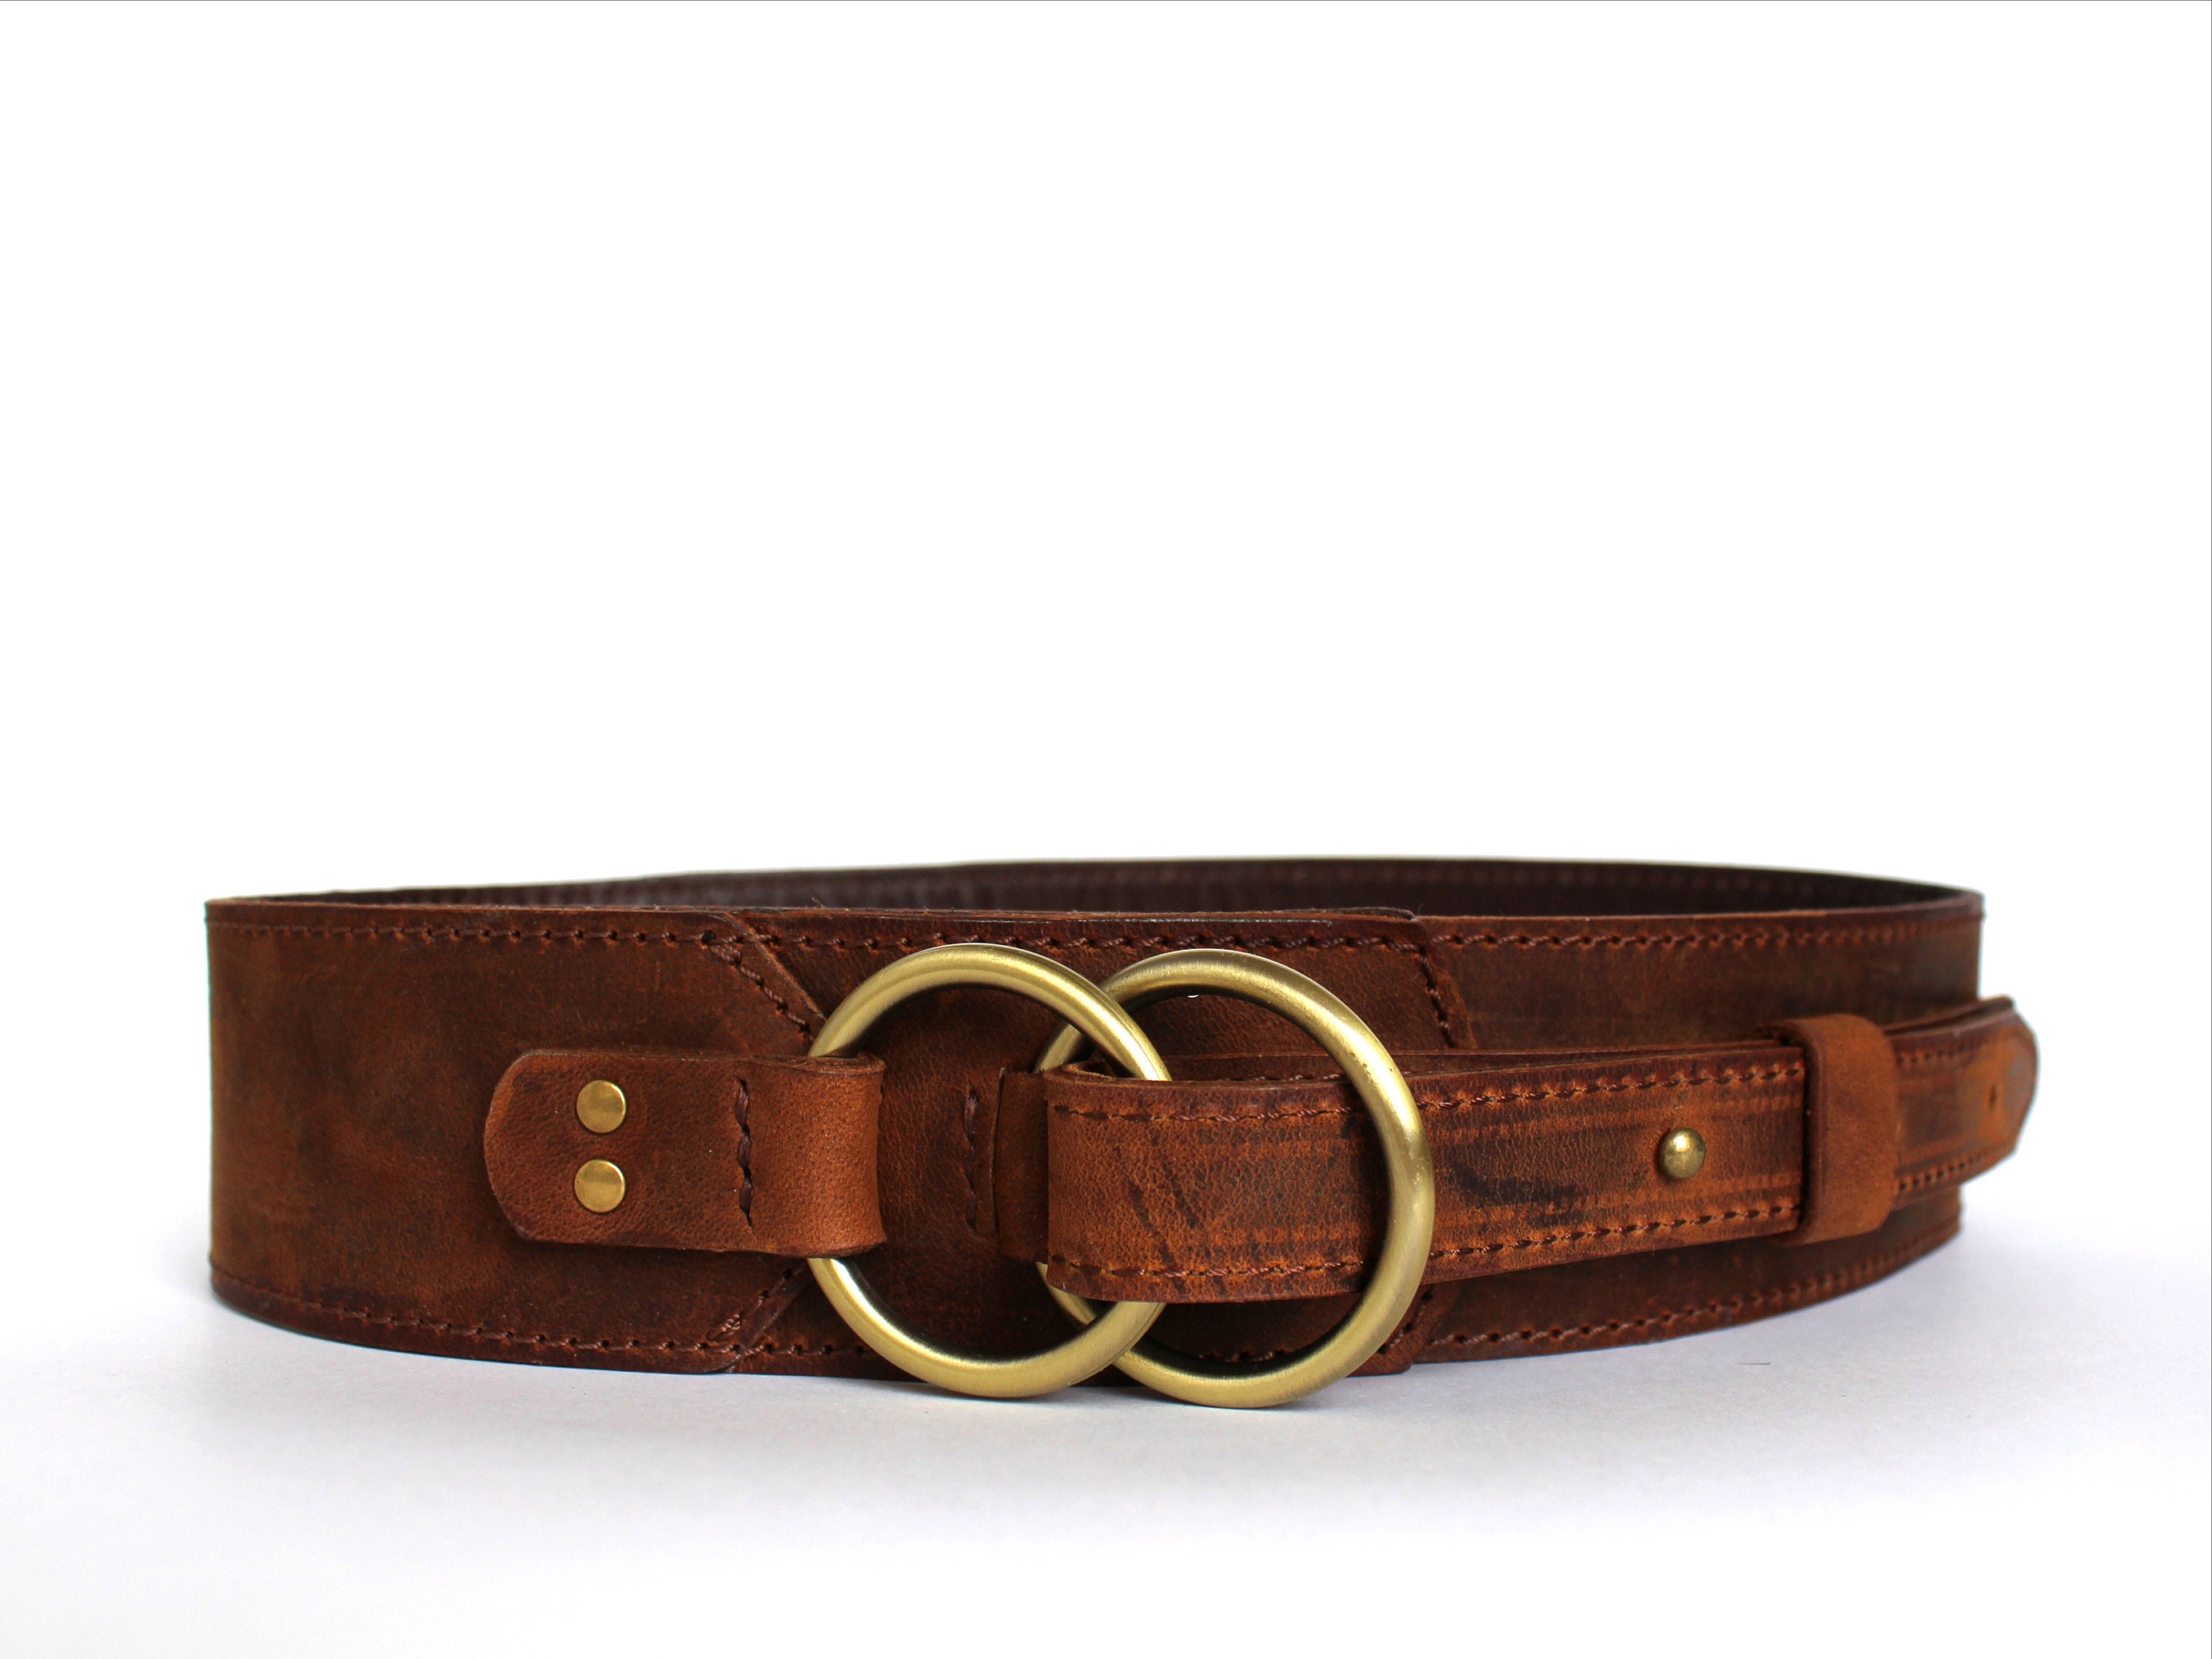 Lovely Brown Leather Belt Women Wide Waist Belt Leather 